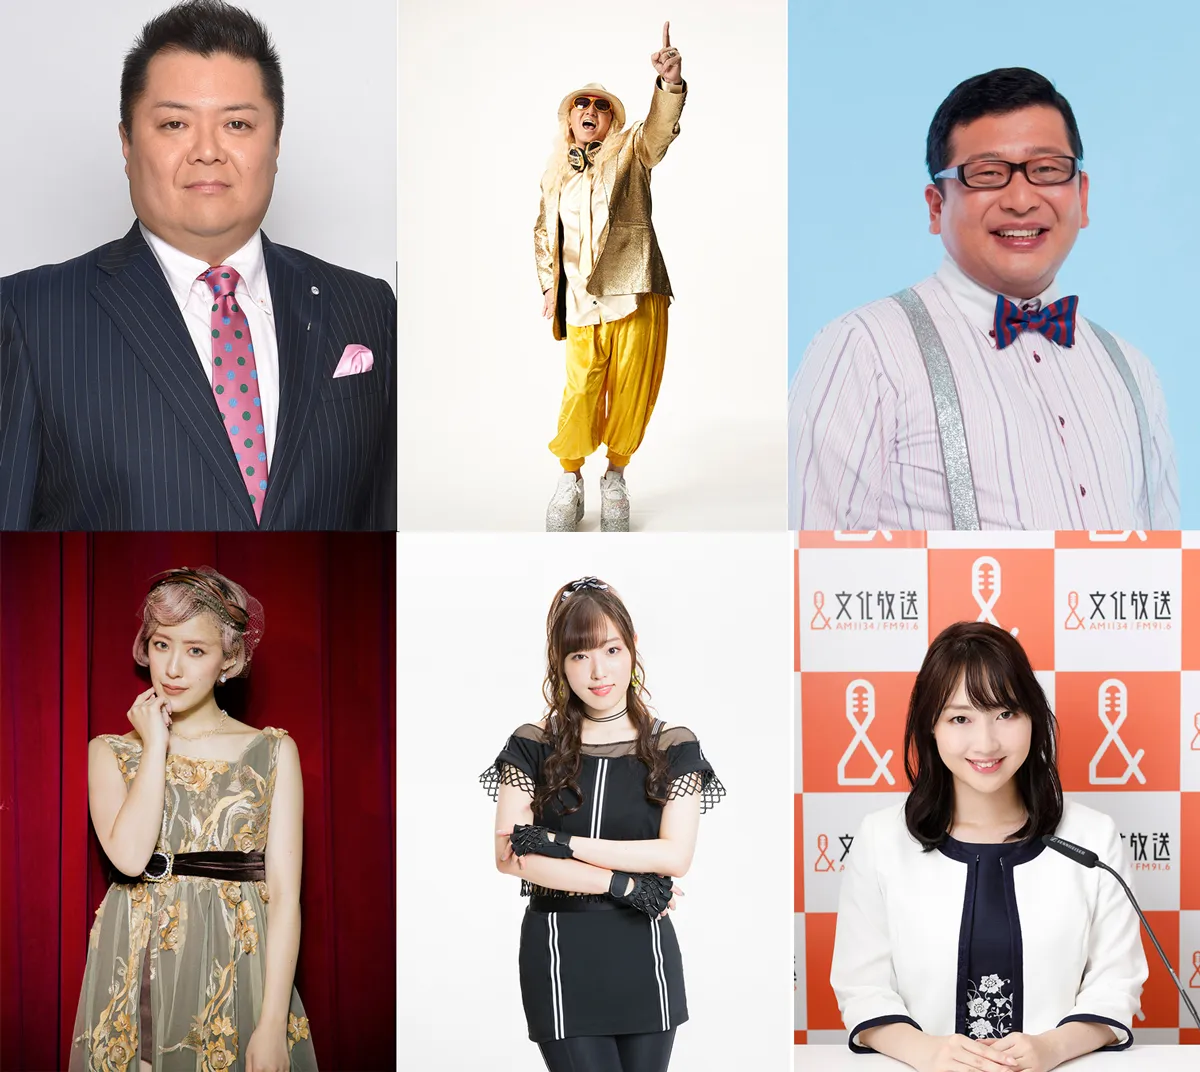 6名の番組パーソナリティが日替わりで登場。(左上から)、小杉竜一、DJ KOO、チャンカワイ、(左下から)夏焼雅、譜久村聖、西川文野アナウンサー